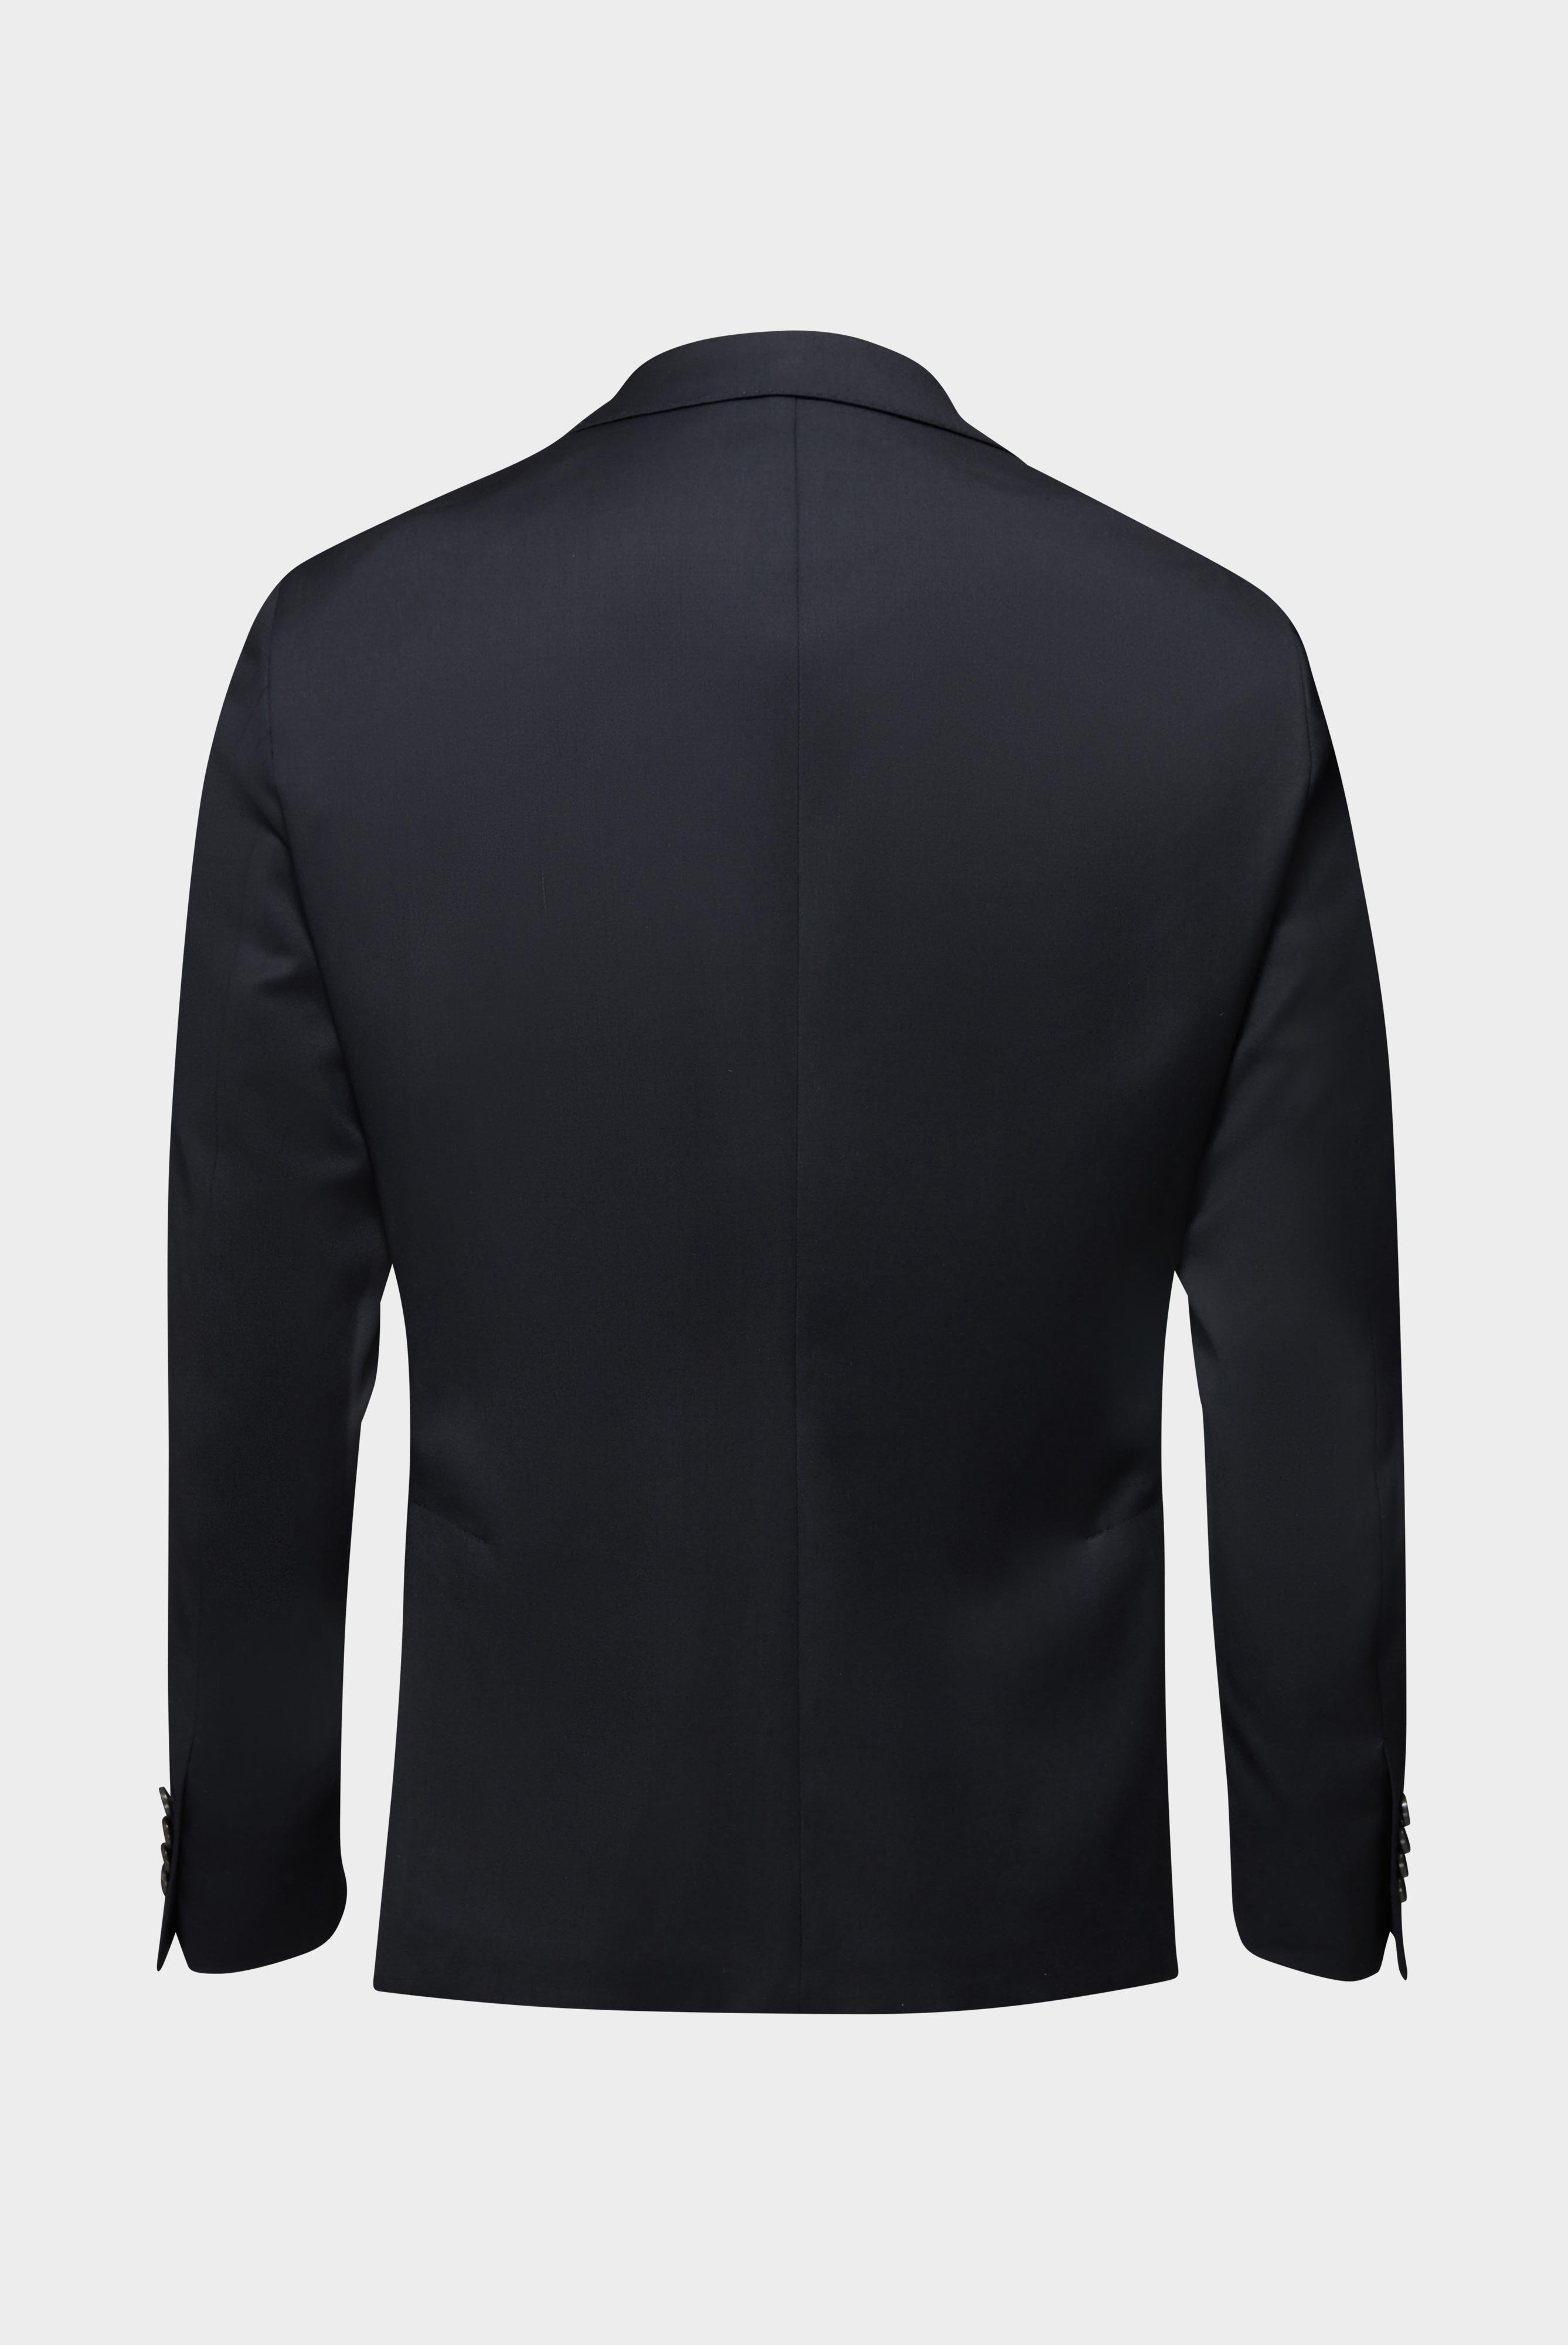 Blazers+Wool Jacket Slim Fit+20.7759..H01010.099.23